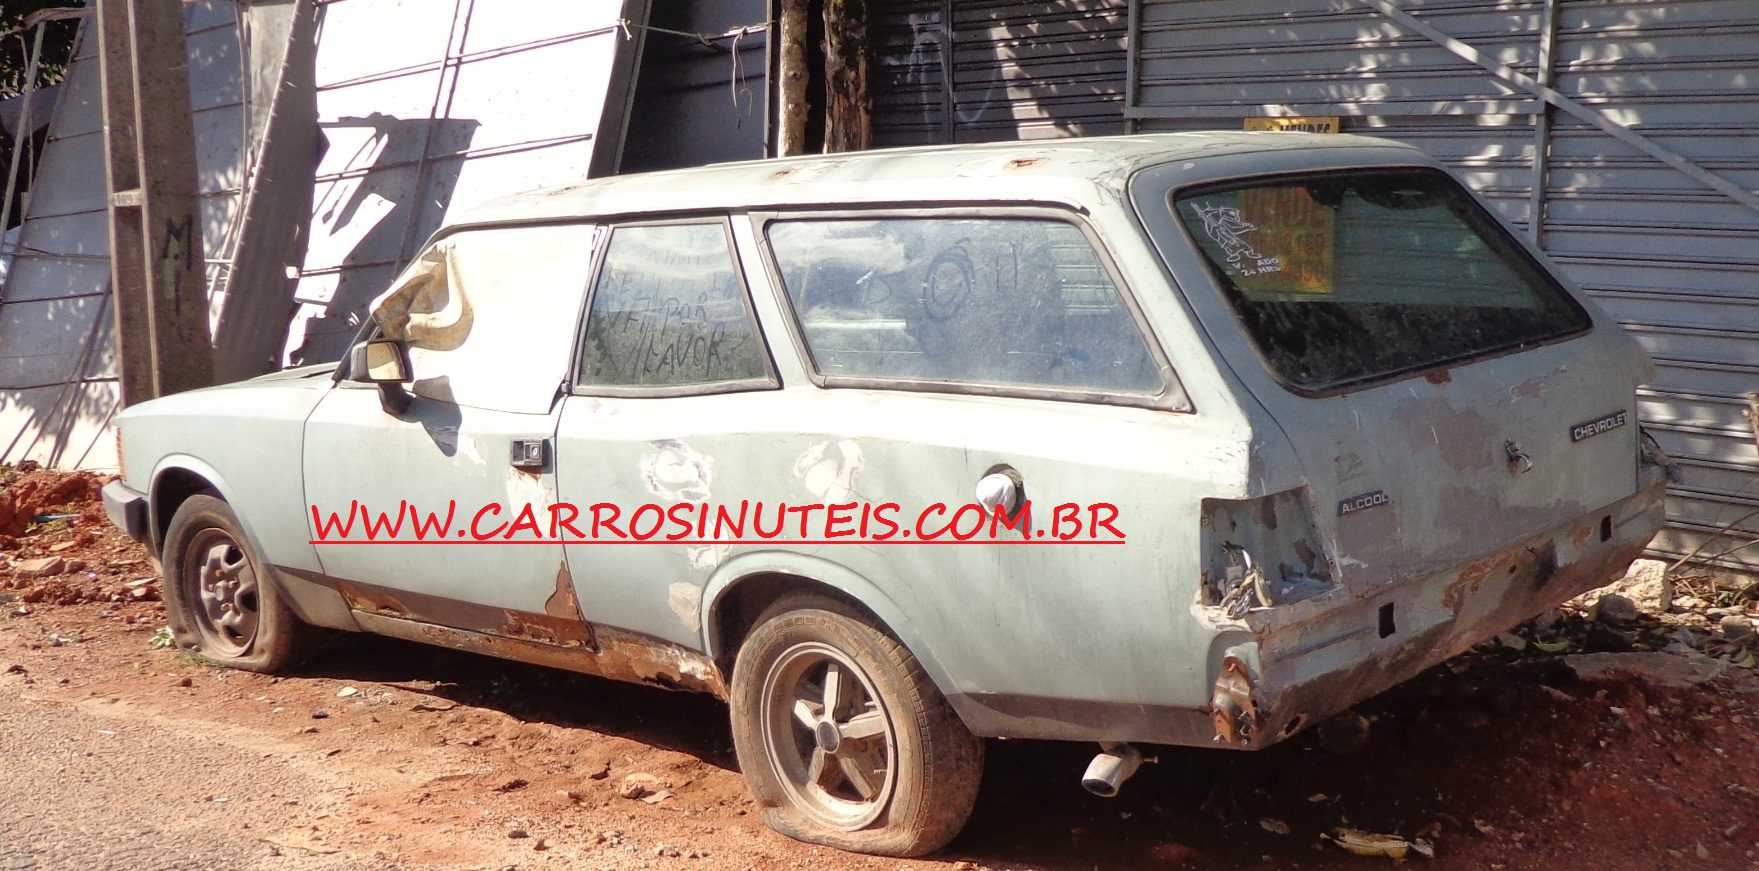 GM Caravan, by Michel, Curitiba, Paraná